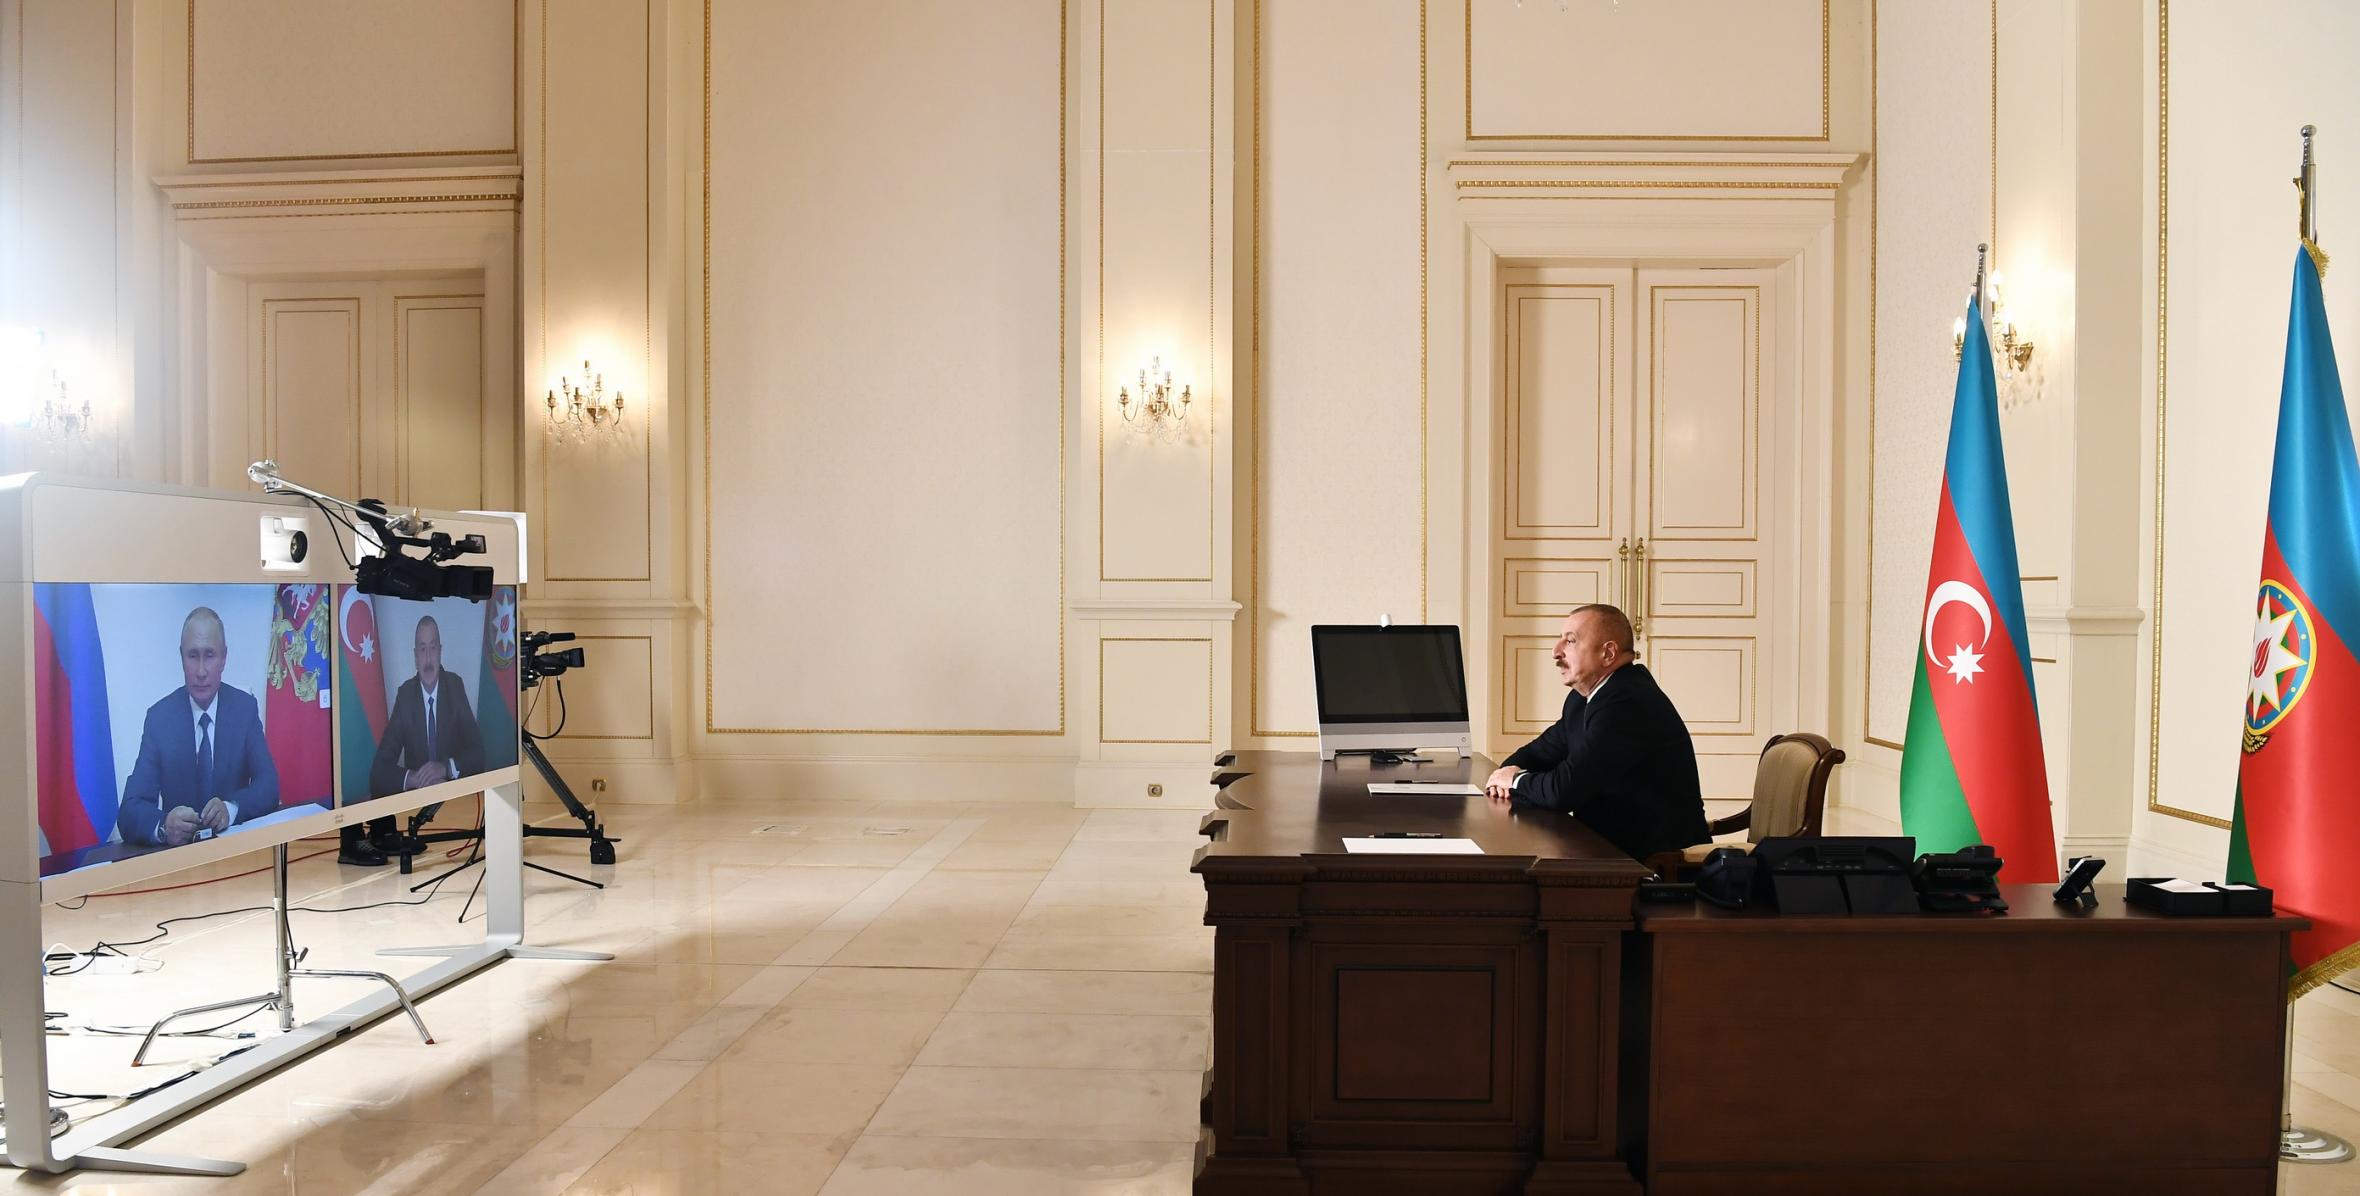 Ильхам Алиев и Президент России Владимир Путин встретились в формате видеоконференции